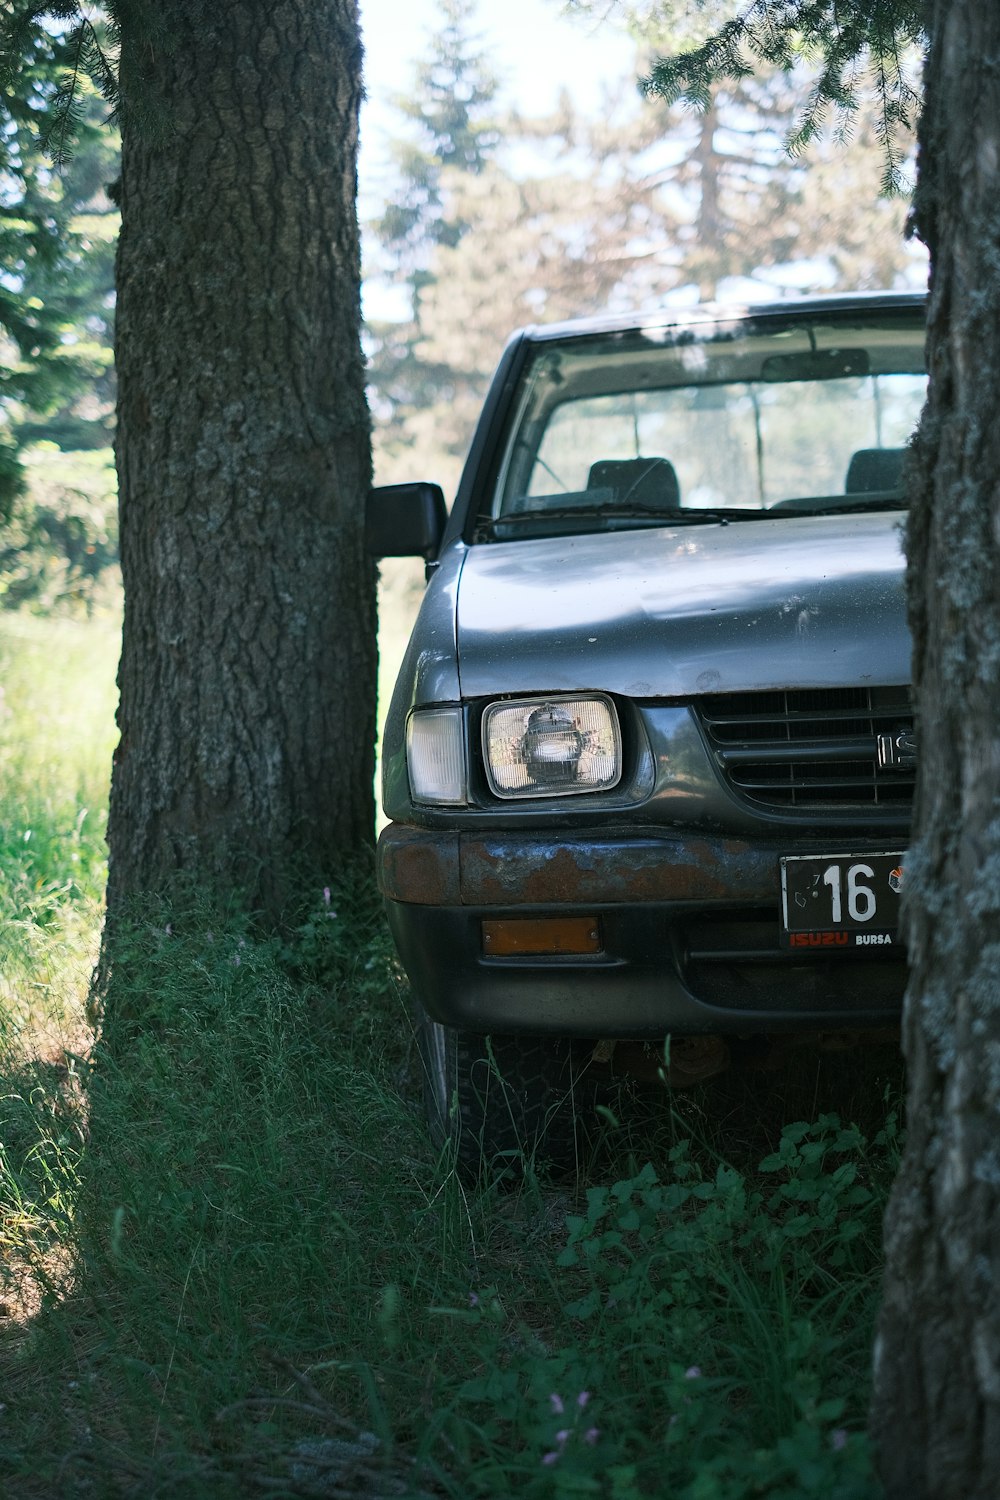 Une voiture garée dans les bois derrière des arbres